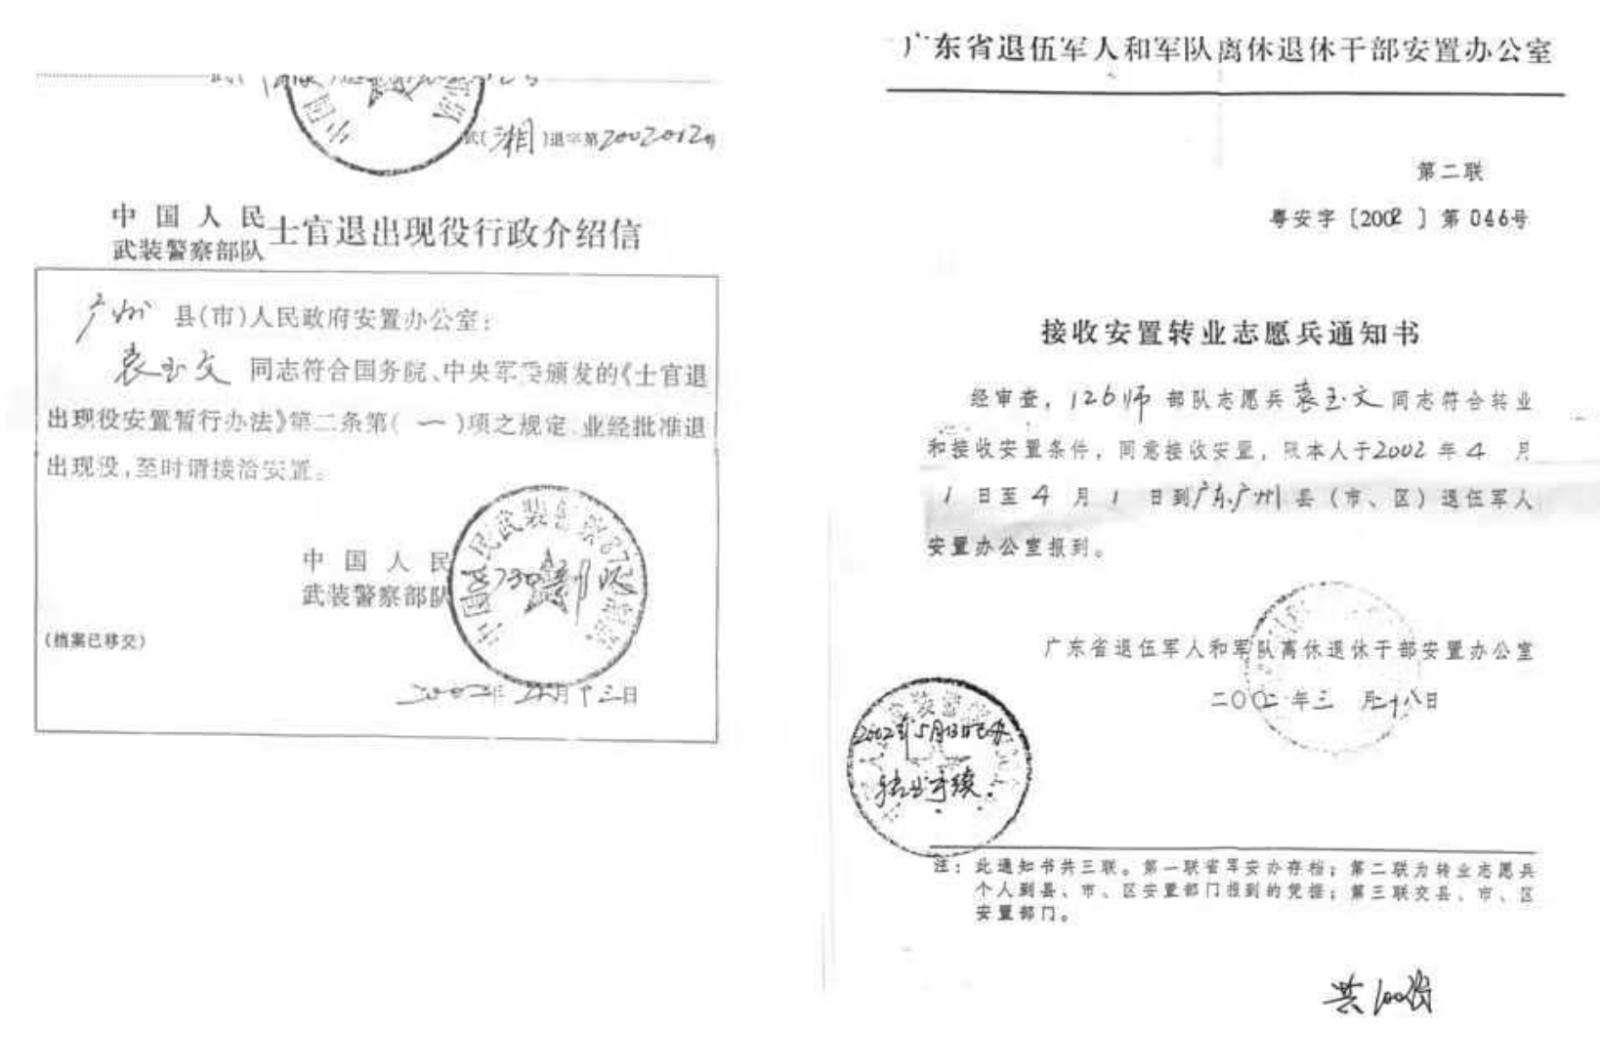 2002年，广东省退伍军人安置办公室同意接收安置袁玉文，发了通知书。.jpg